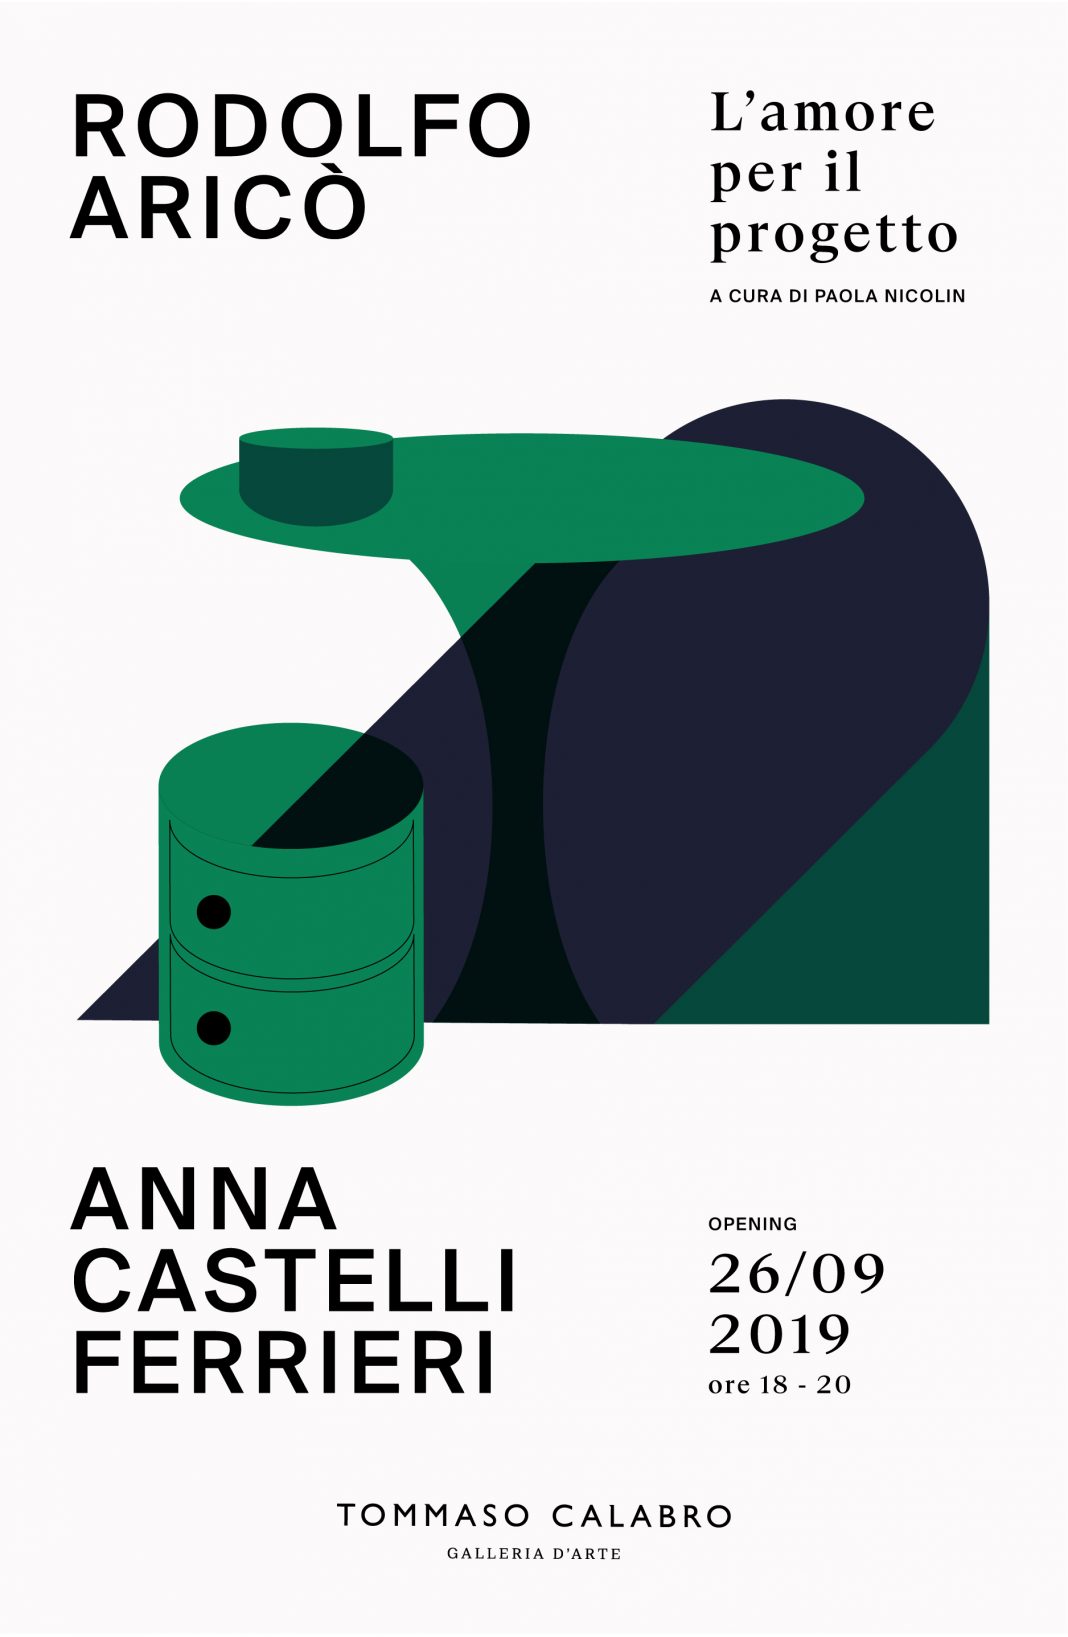 Rodolfo Aricò / Anna Castelli Ferrieri – L’amore per il progettohttps://www.exibart.com/repository/media/formidable/11/ITA_Invito_Aricò_Castelli-1068x1637.jpg